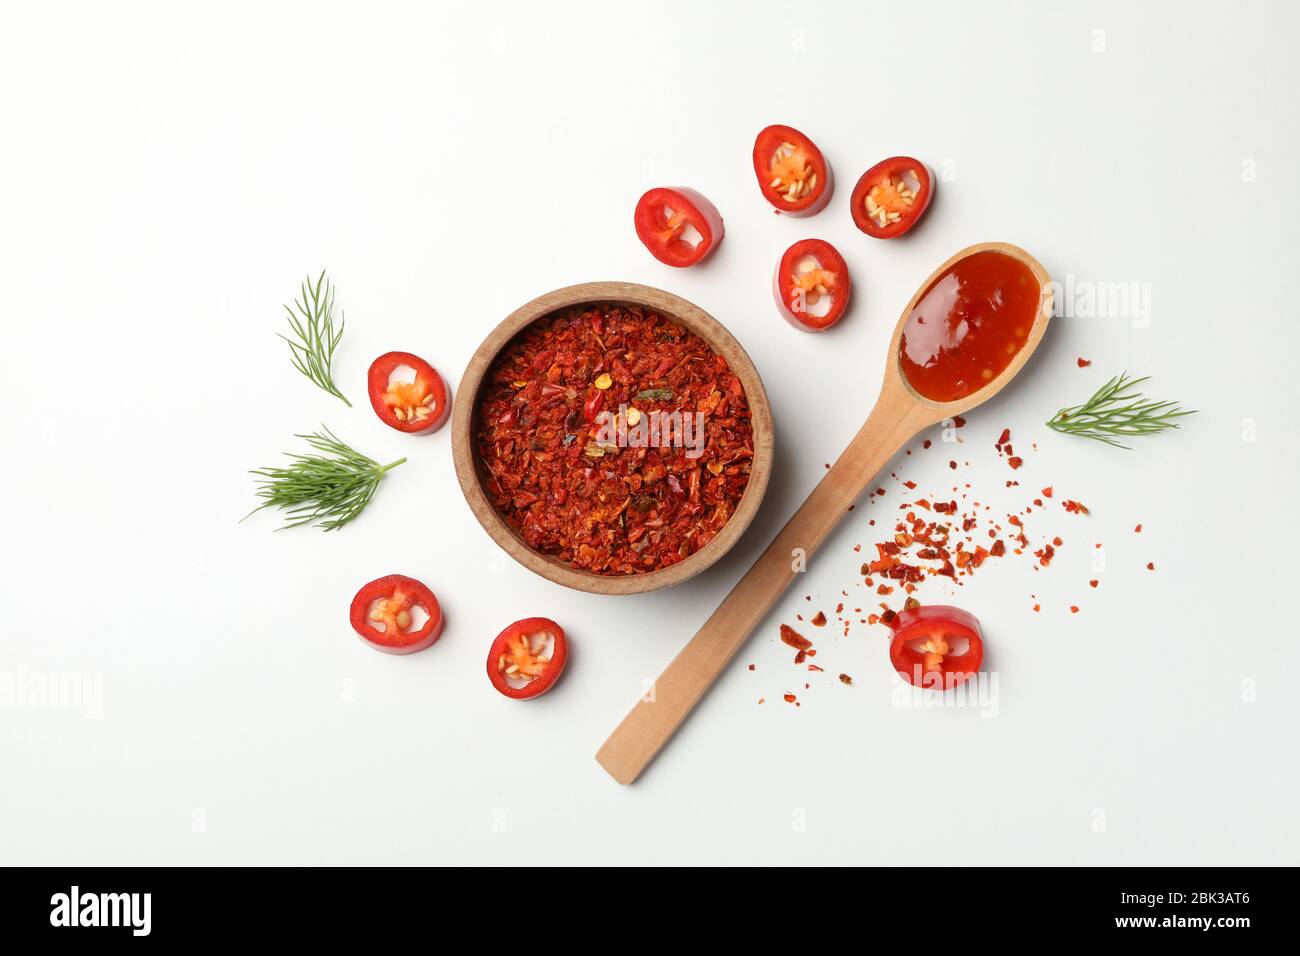 Composición con Chile, especias y salsa sobre fondo blanco Foto de stock